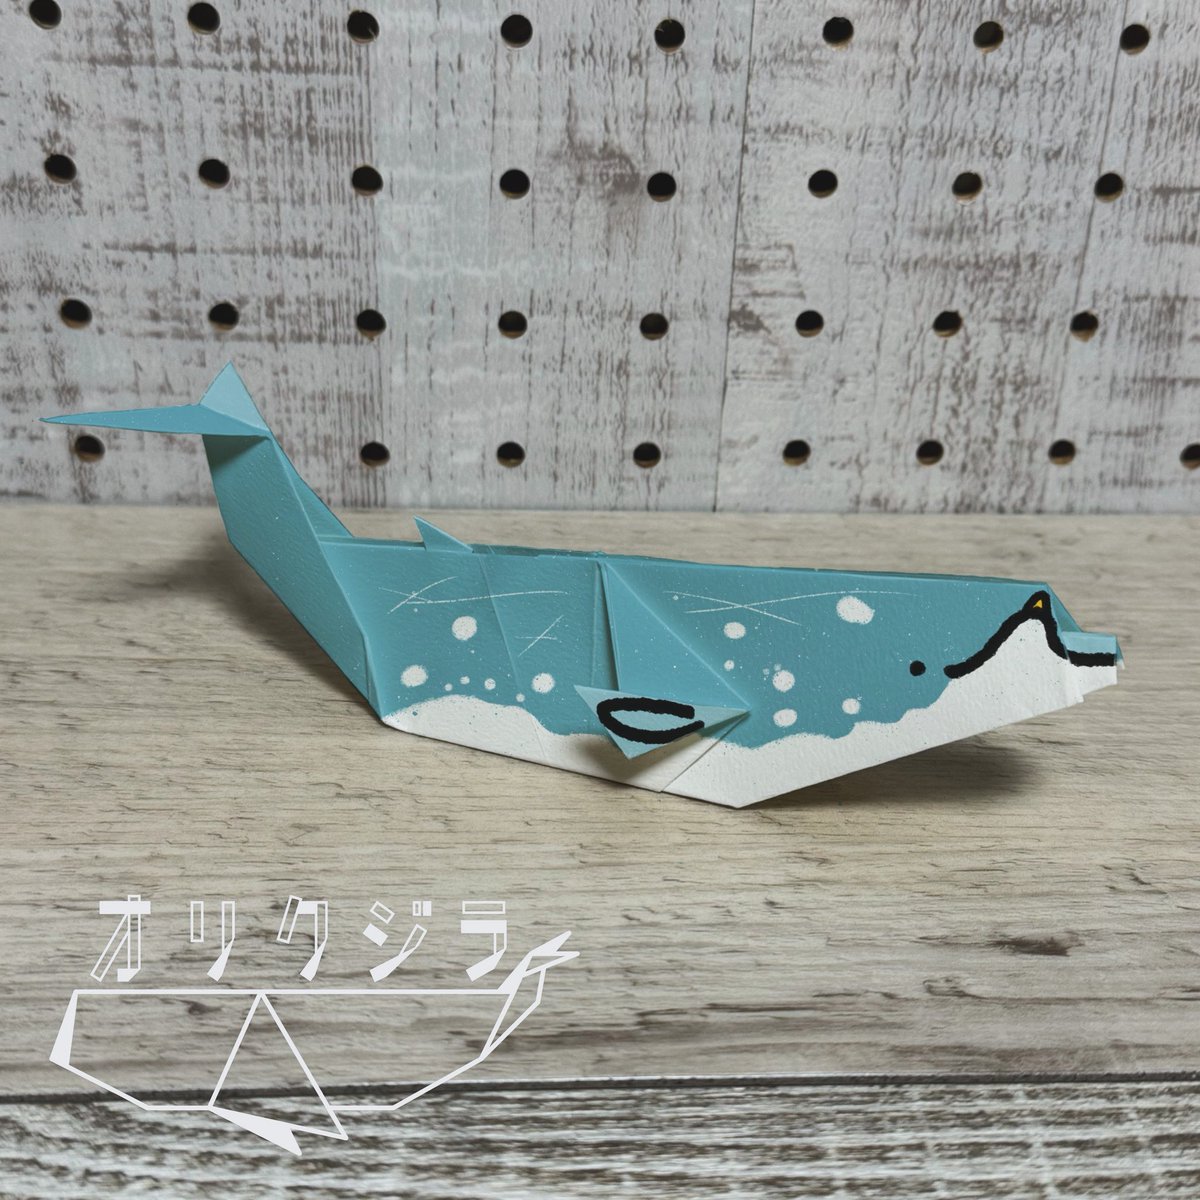 今日はコブハクジラをオリクジラ🐳
新月だったらしく、作業がはかどりました✨

#オリクジラ
#コブハクジラ
#オリガミ
#折り紙
#origami
#あらたひとむ
#クジラ
#コビレゴンドウ
#ペーパーアート
#ペーパークラフト
#papercrafts